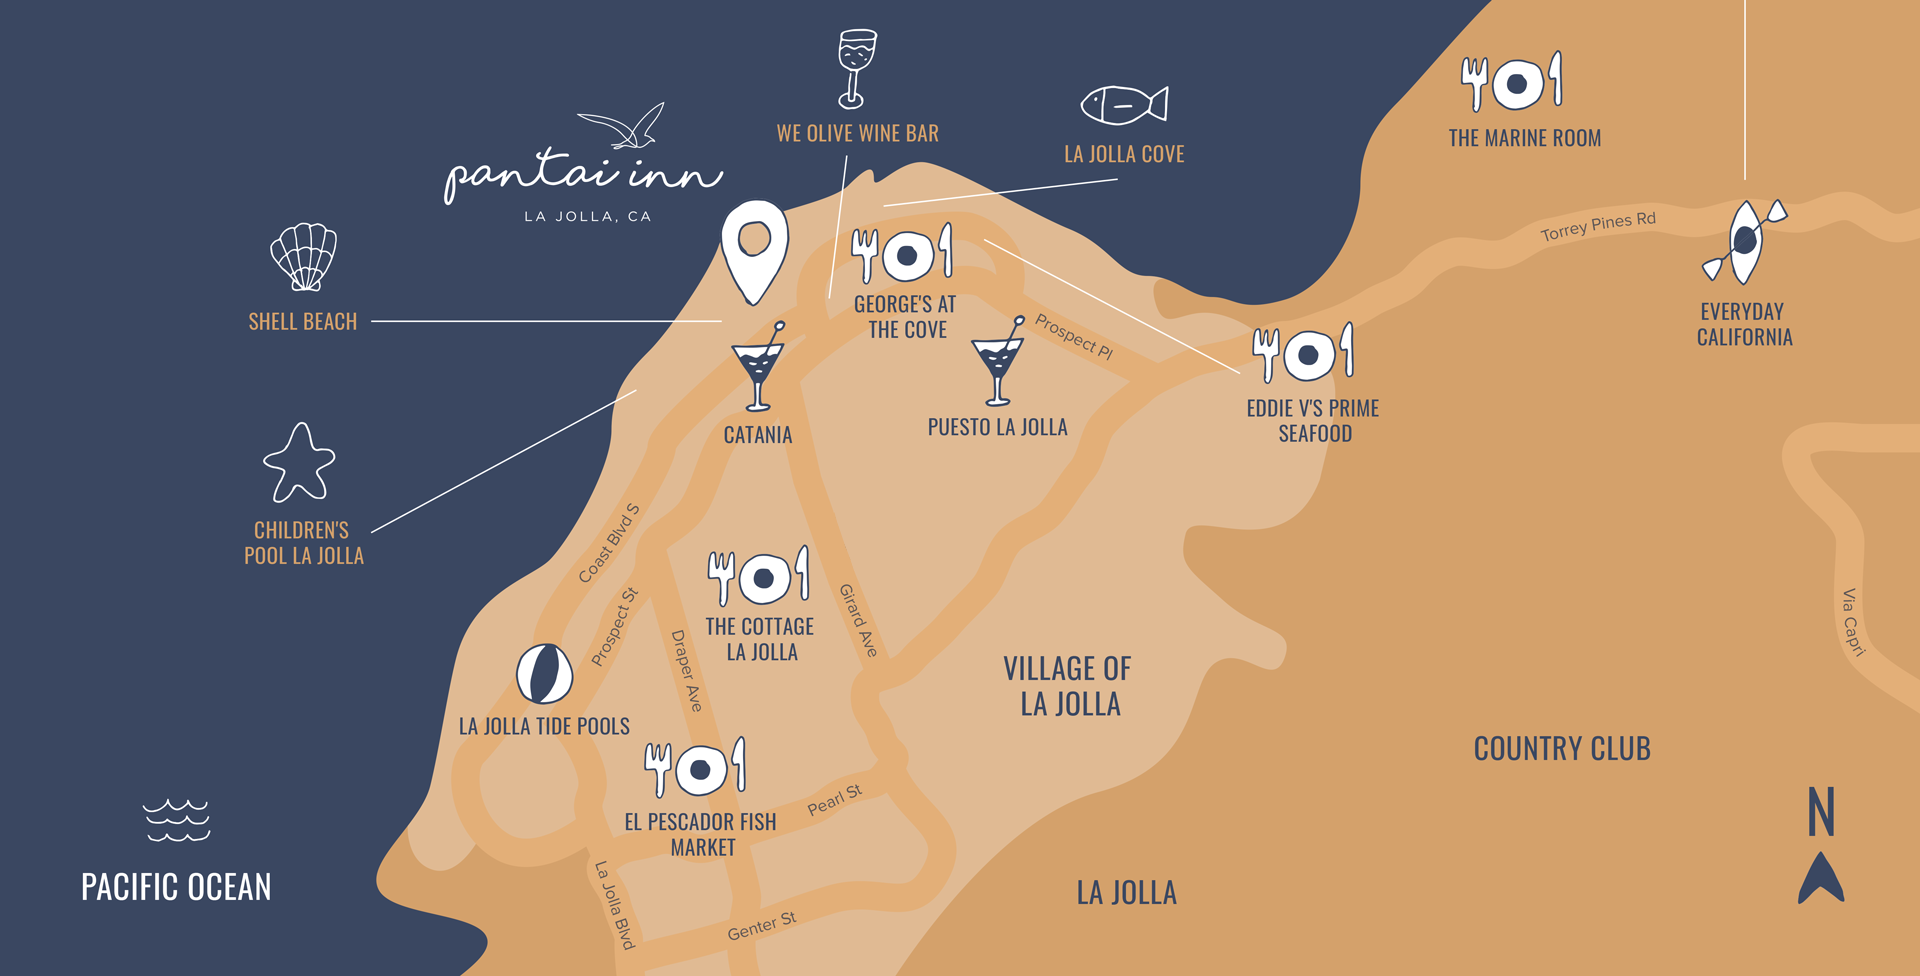 Illustrated map of Pantai Inn in La Jolla